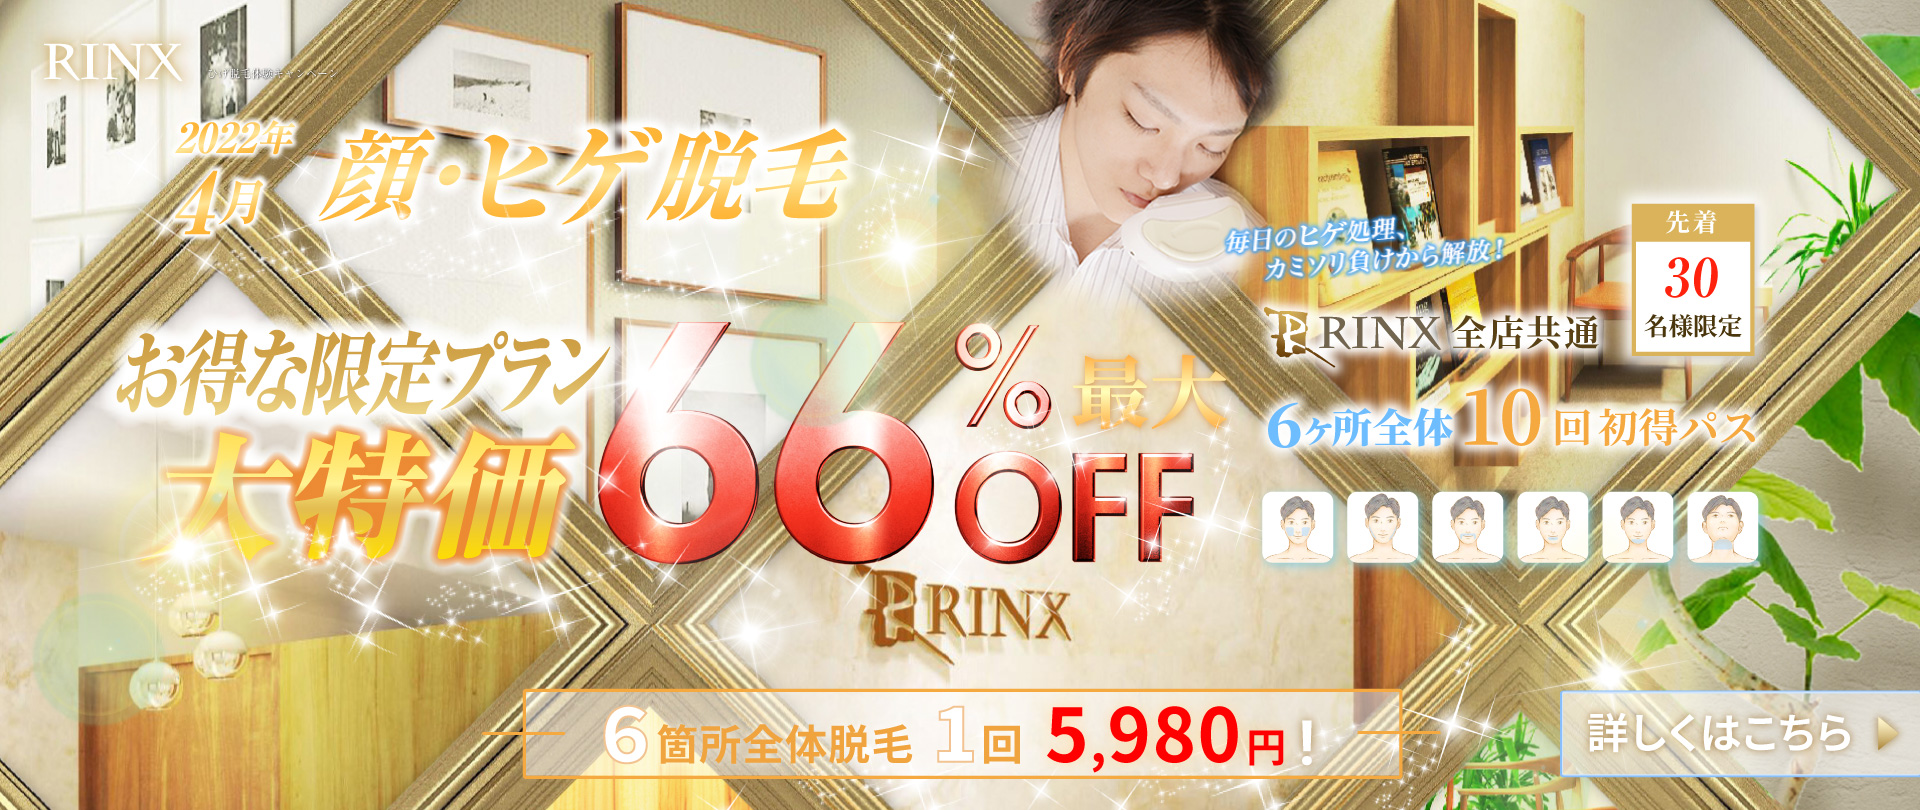 RINX 銀座有楽町店の画像